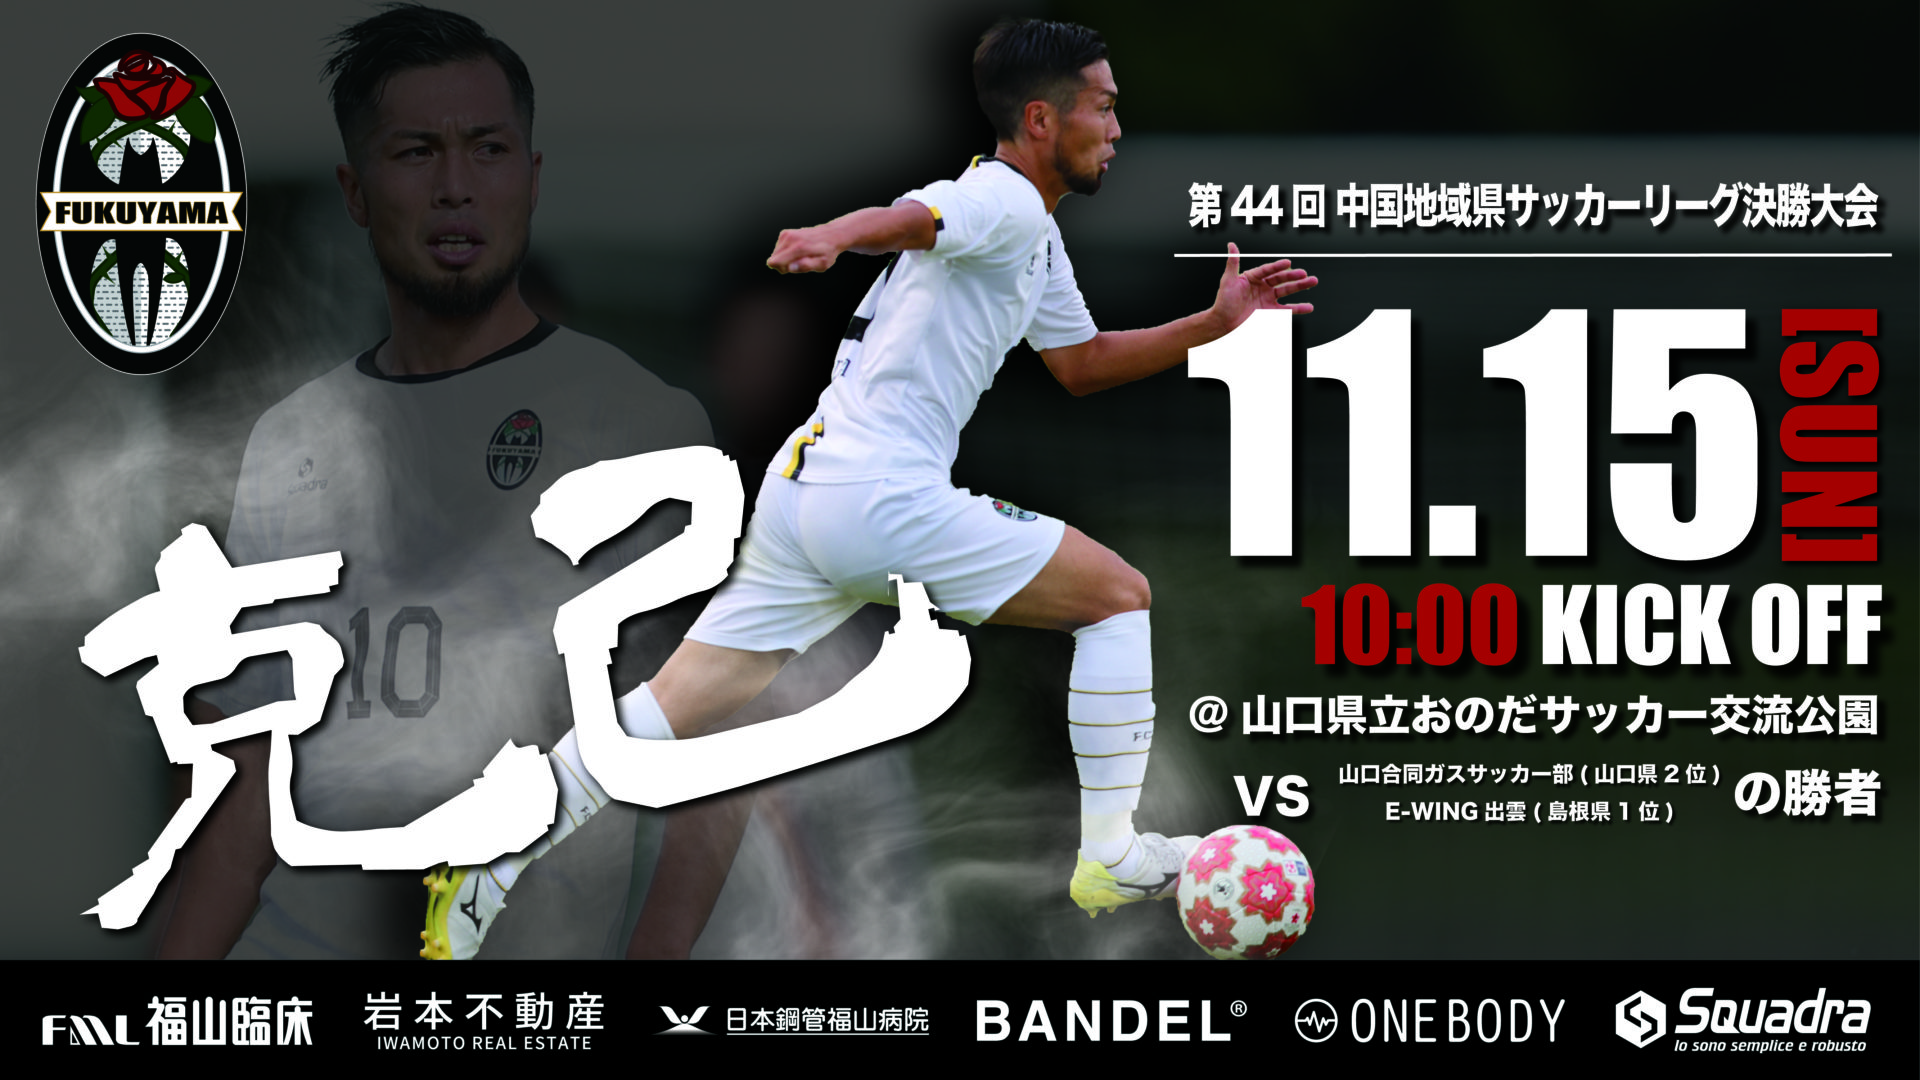 リリース 第44回 中国地域県サッカーリーグ決勝大会について 福山シティフットボールクラブ 公式ウェブサイト